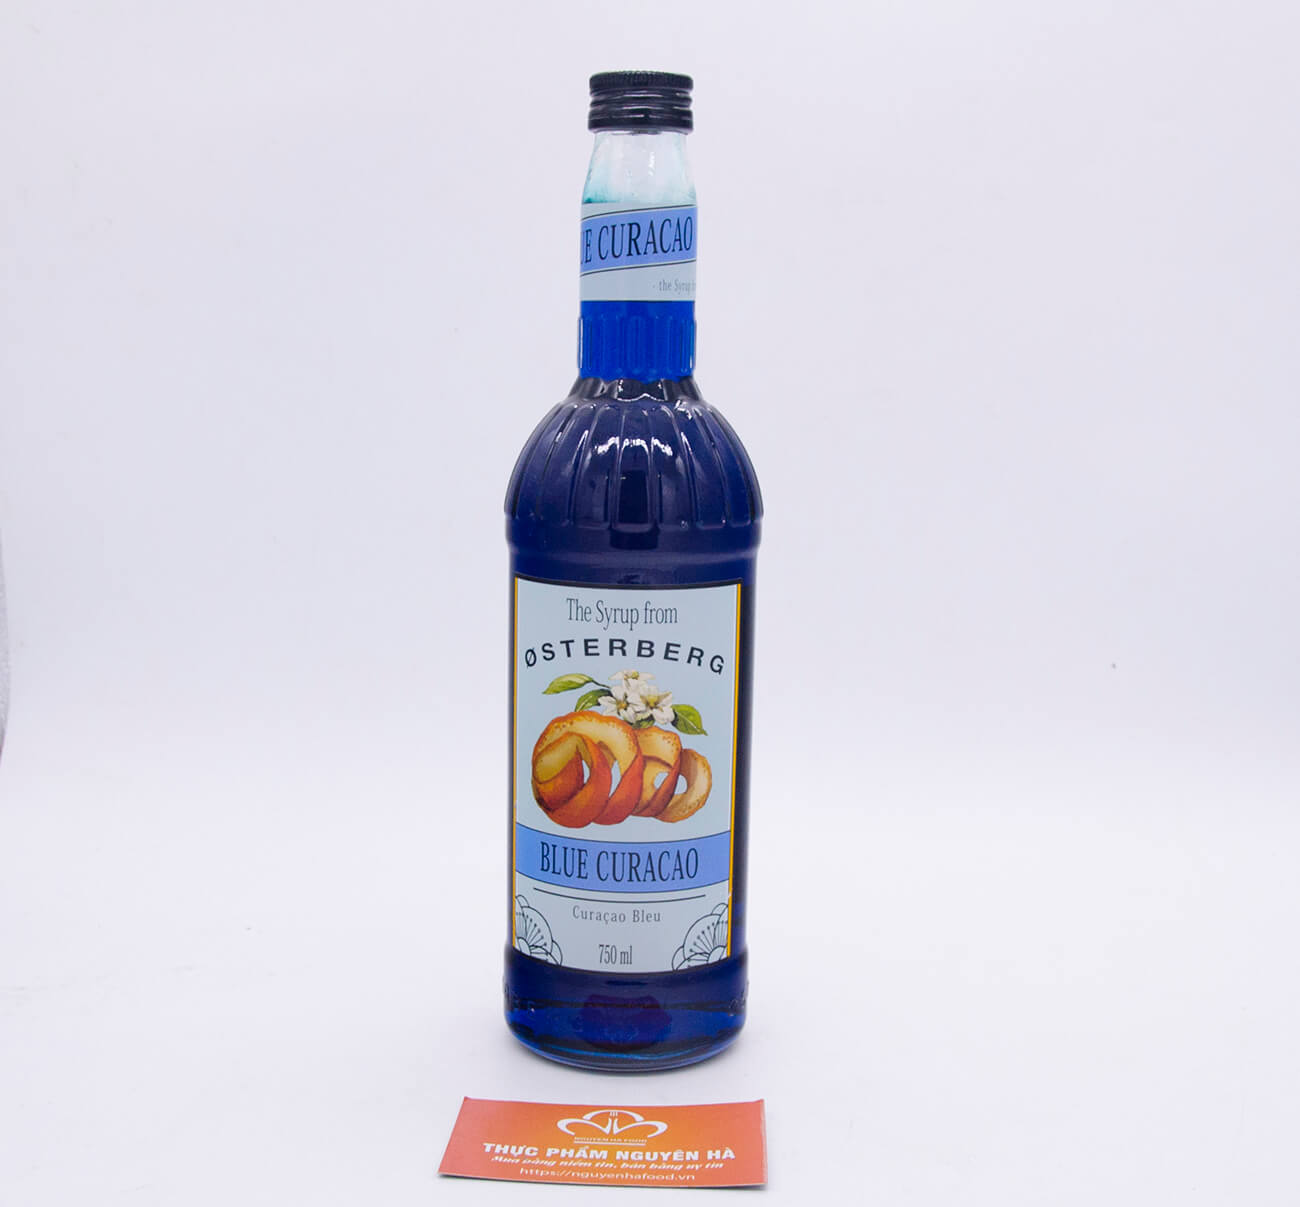 Si rô blue curacao Osterberg – blue curacao syrup 